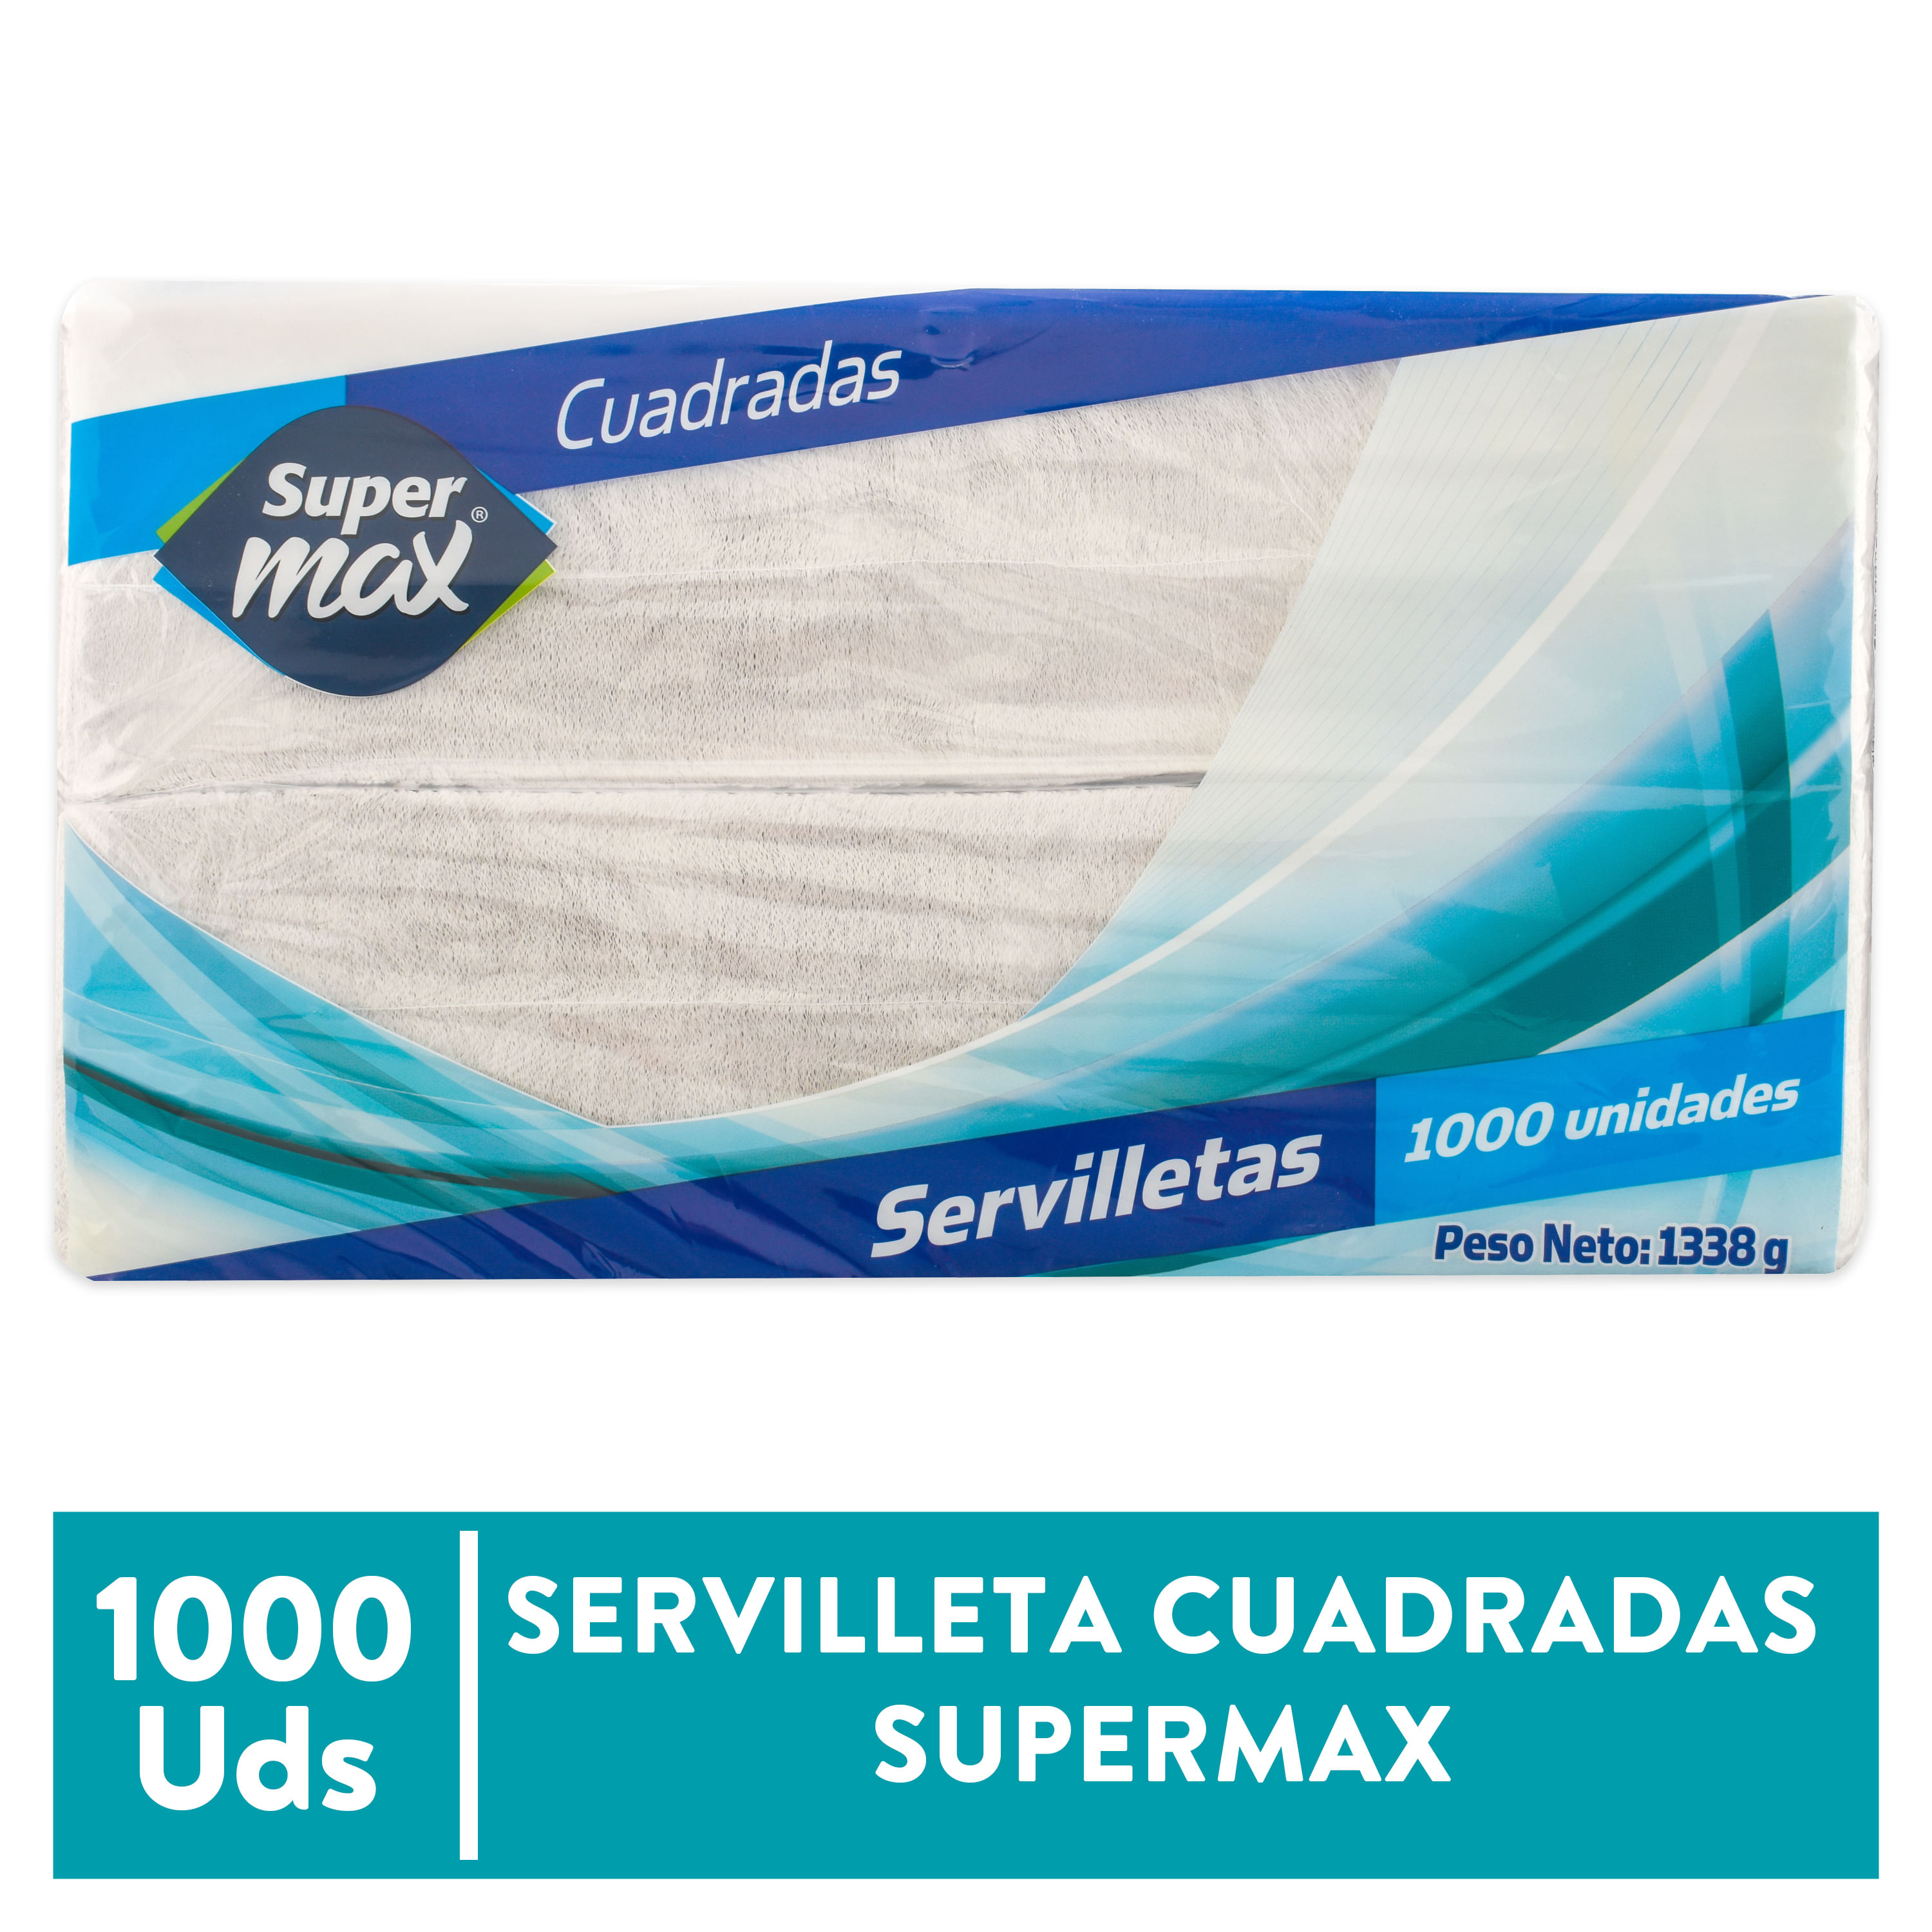 Servilleta-Supermax-Cuadrada-1000-unidades-1-68284